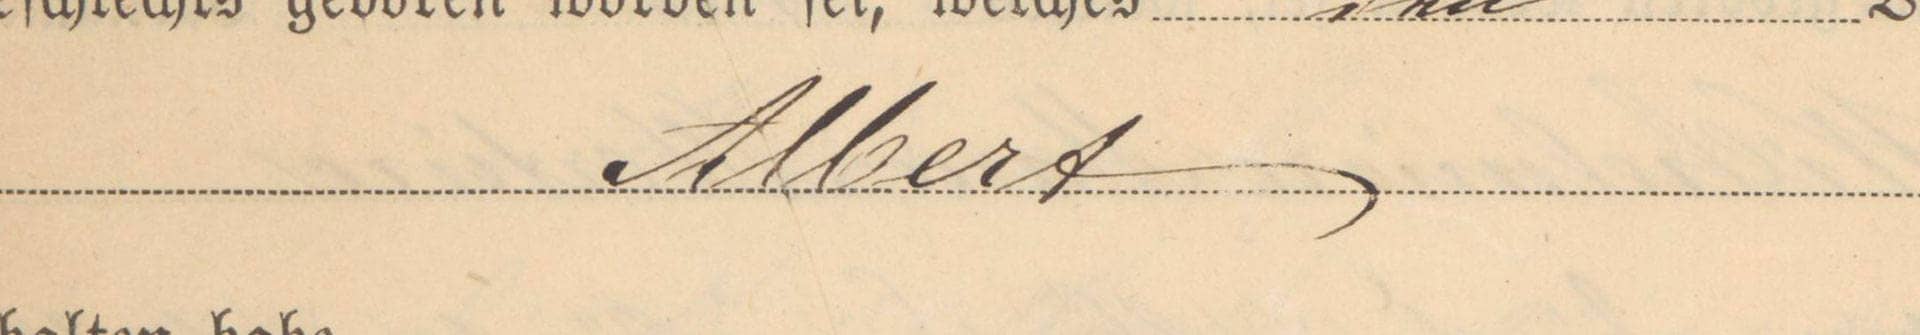 Ausschnitt eines vergilbten Briefes, auf dem der Name "Albert" geschrieben steht.